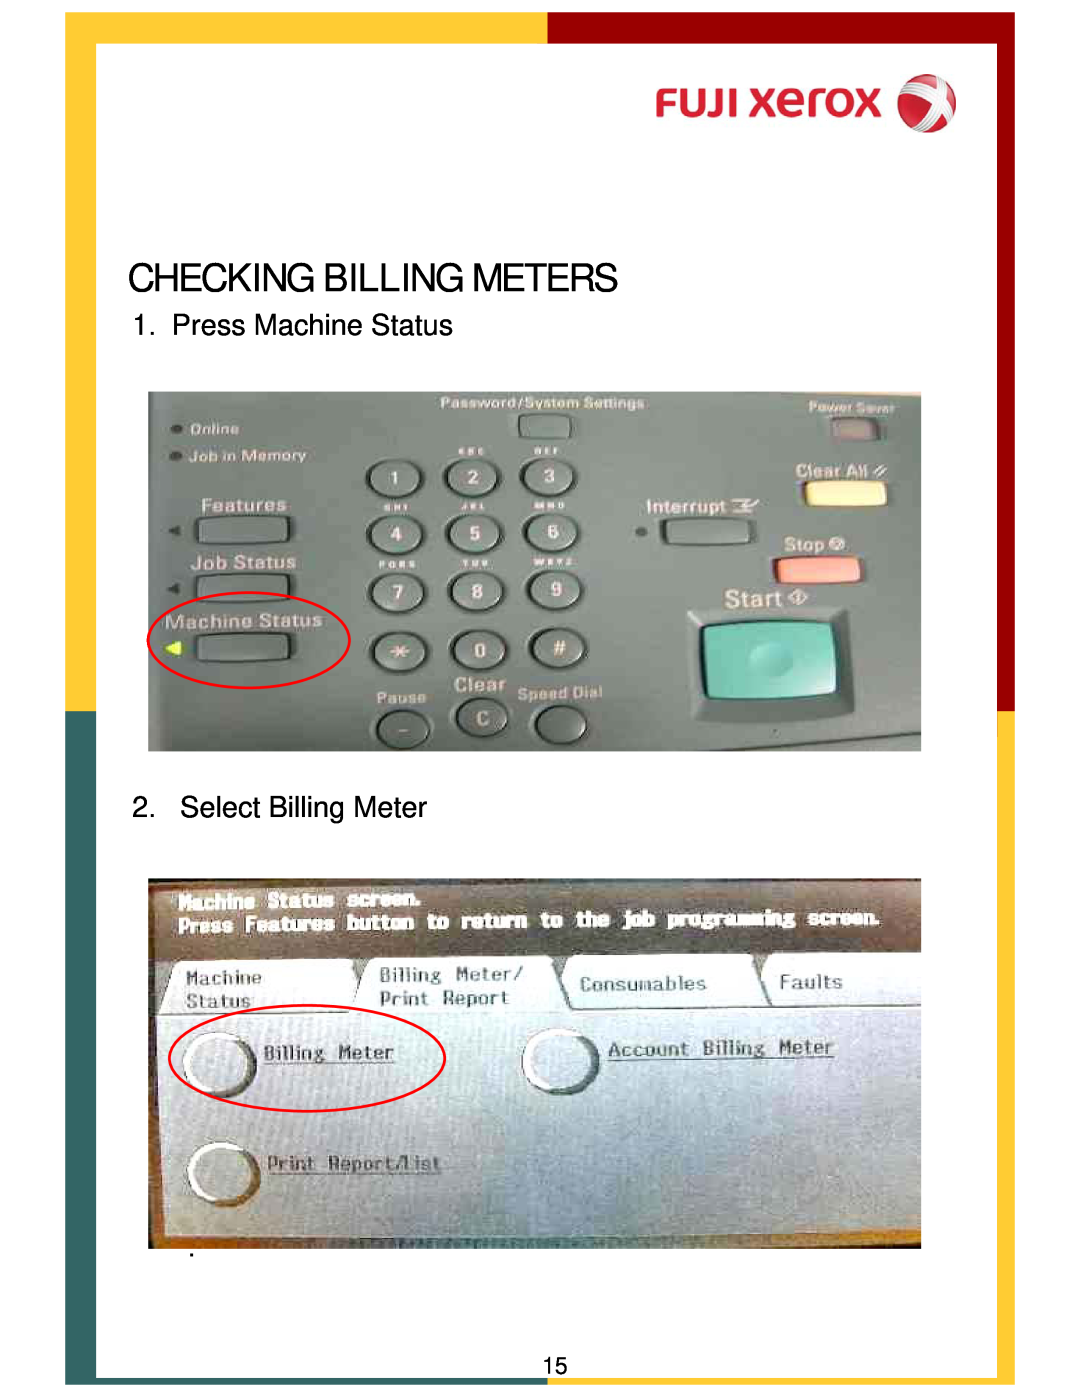 Xerox DCC400, 320 manual Checking Billing Meters, Press Machine Status 2. Select Billing Meter 